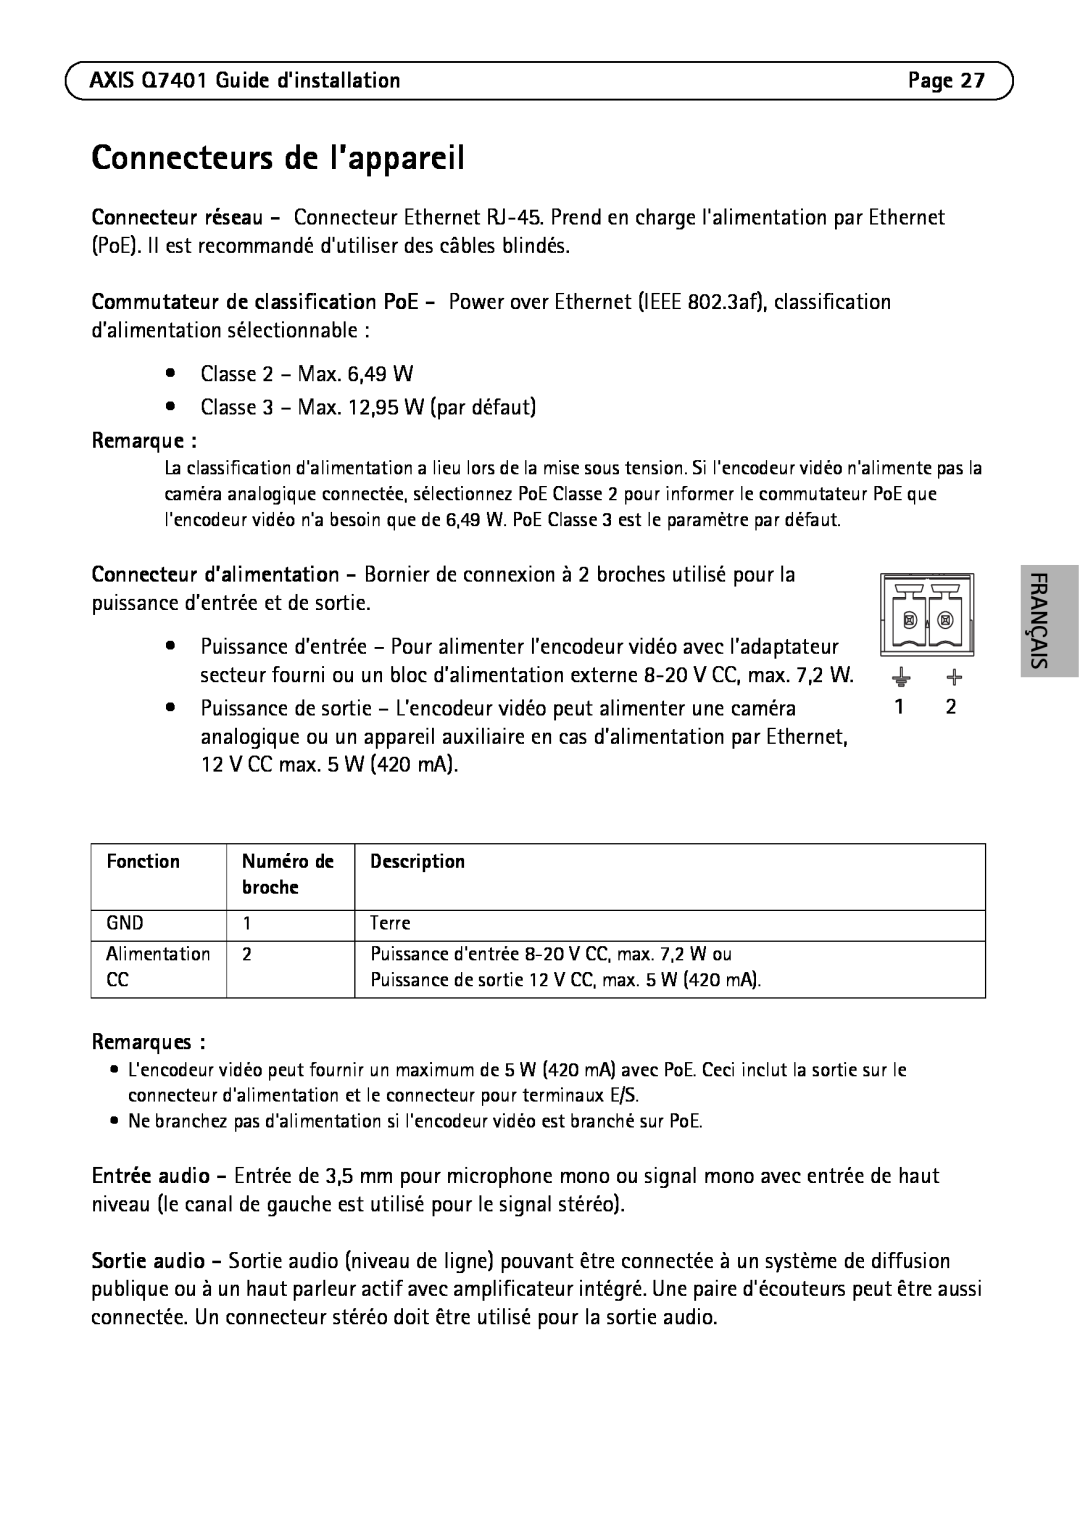 Axis Communications manual Connecteurs de l’appareil, AXIS Q7401 Guide dinstallation, Remarques, Français 